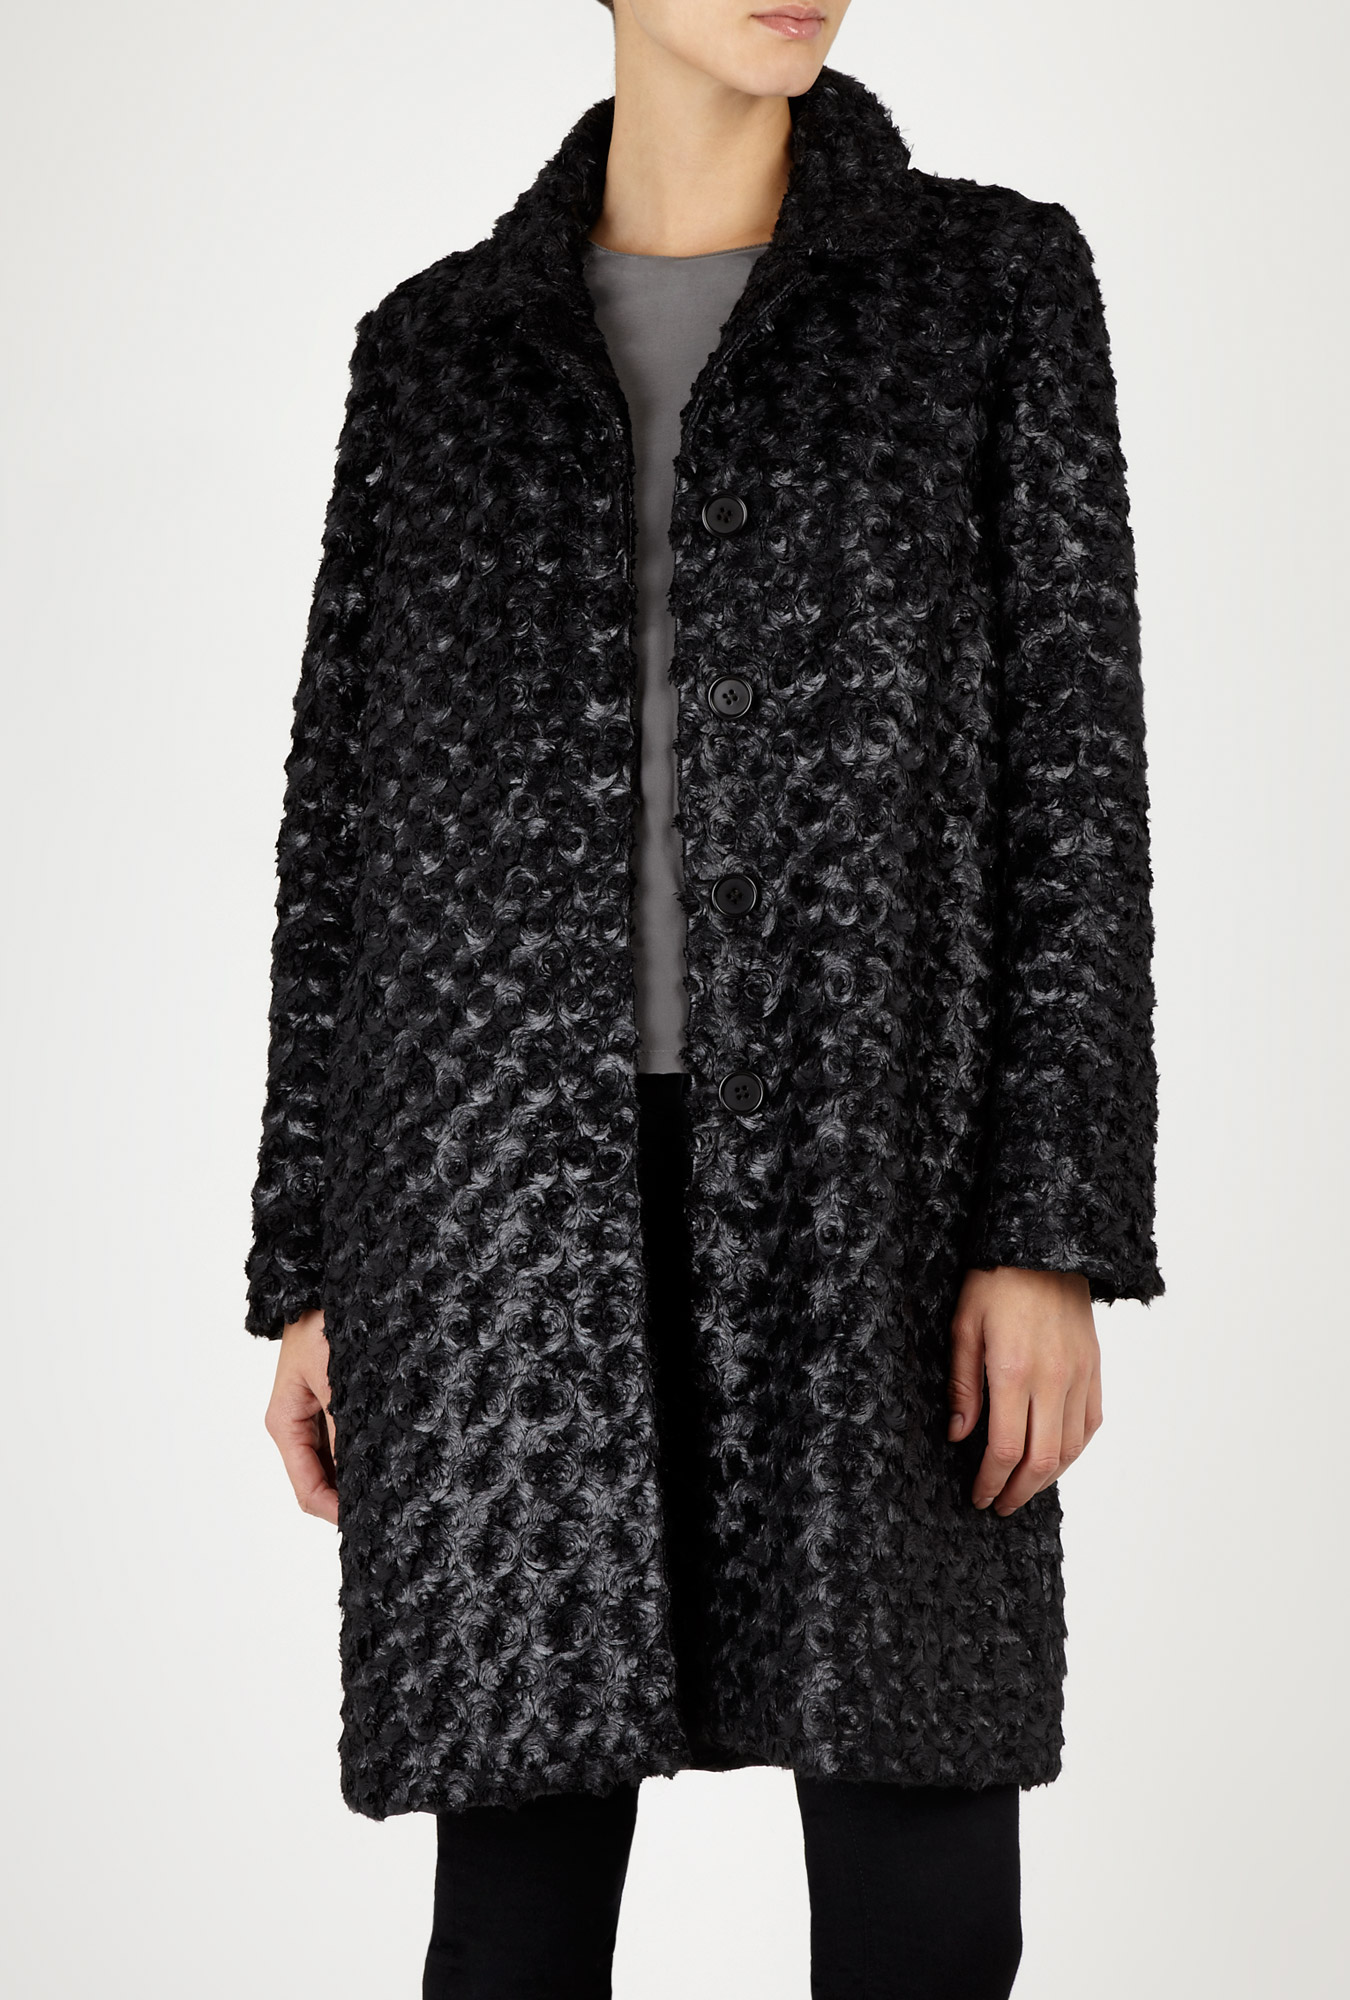 Farhi By Nicole Farhi Winter Plume Coat in Black | Lyst